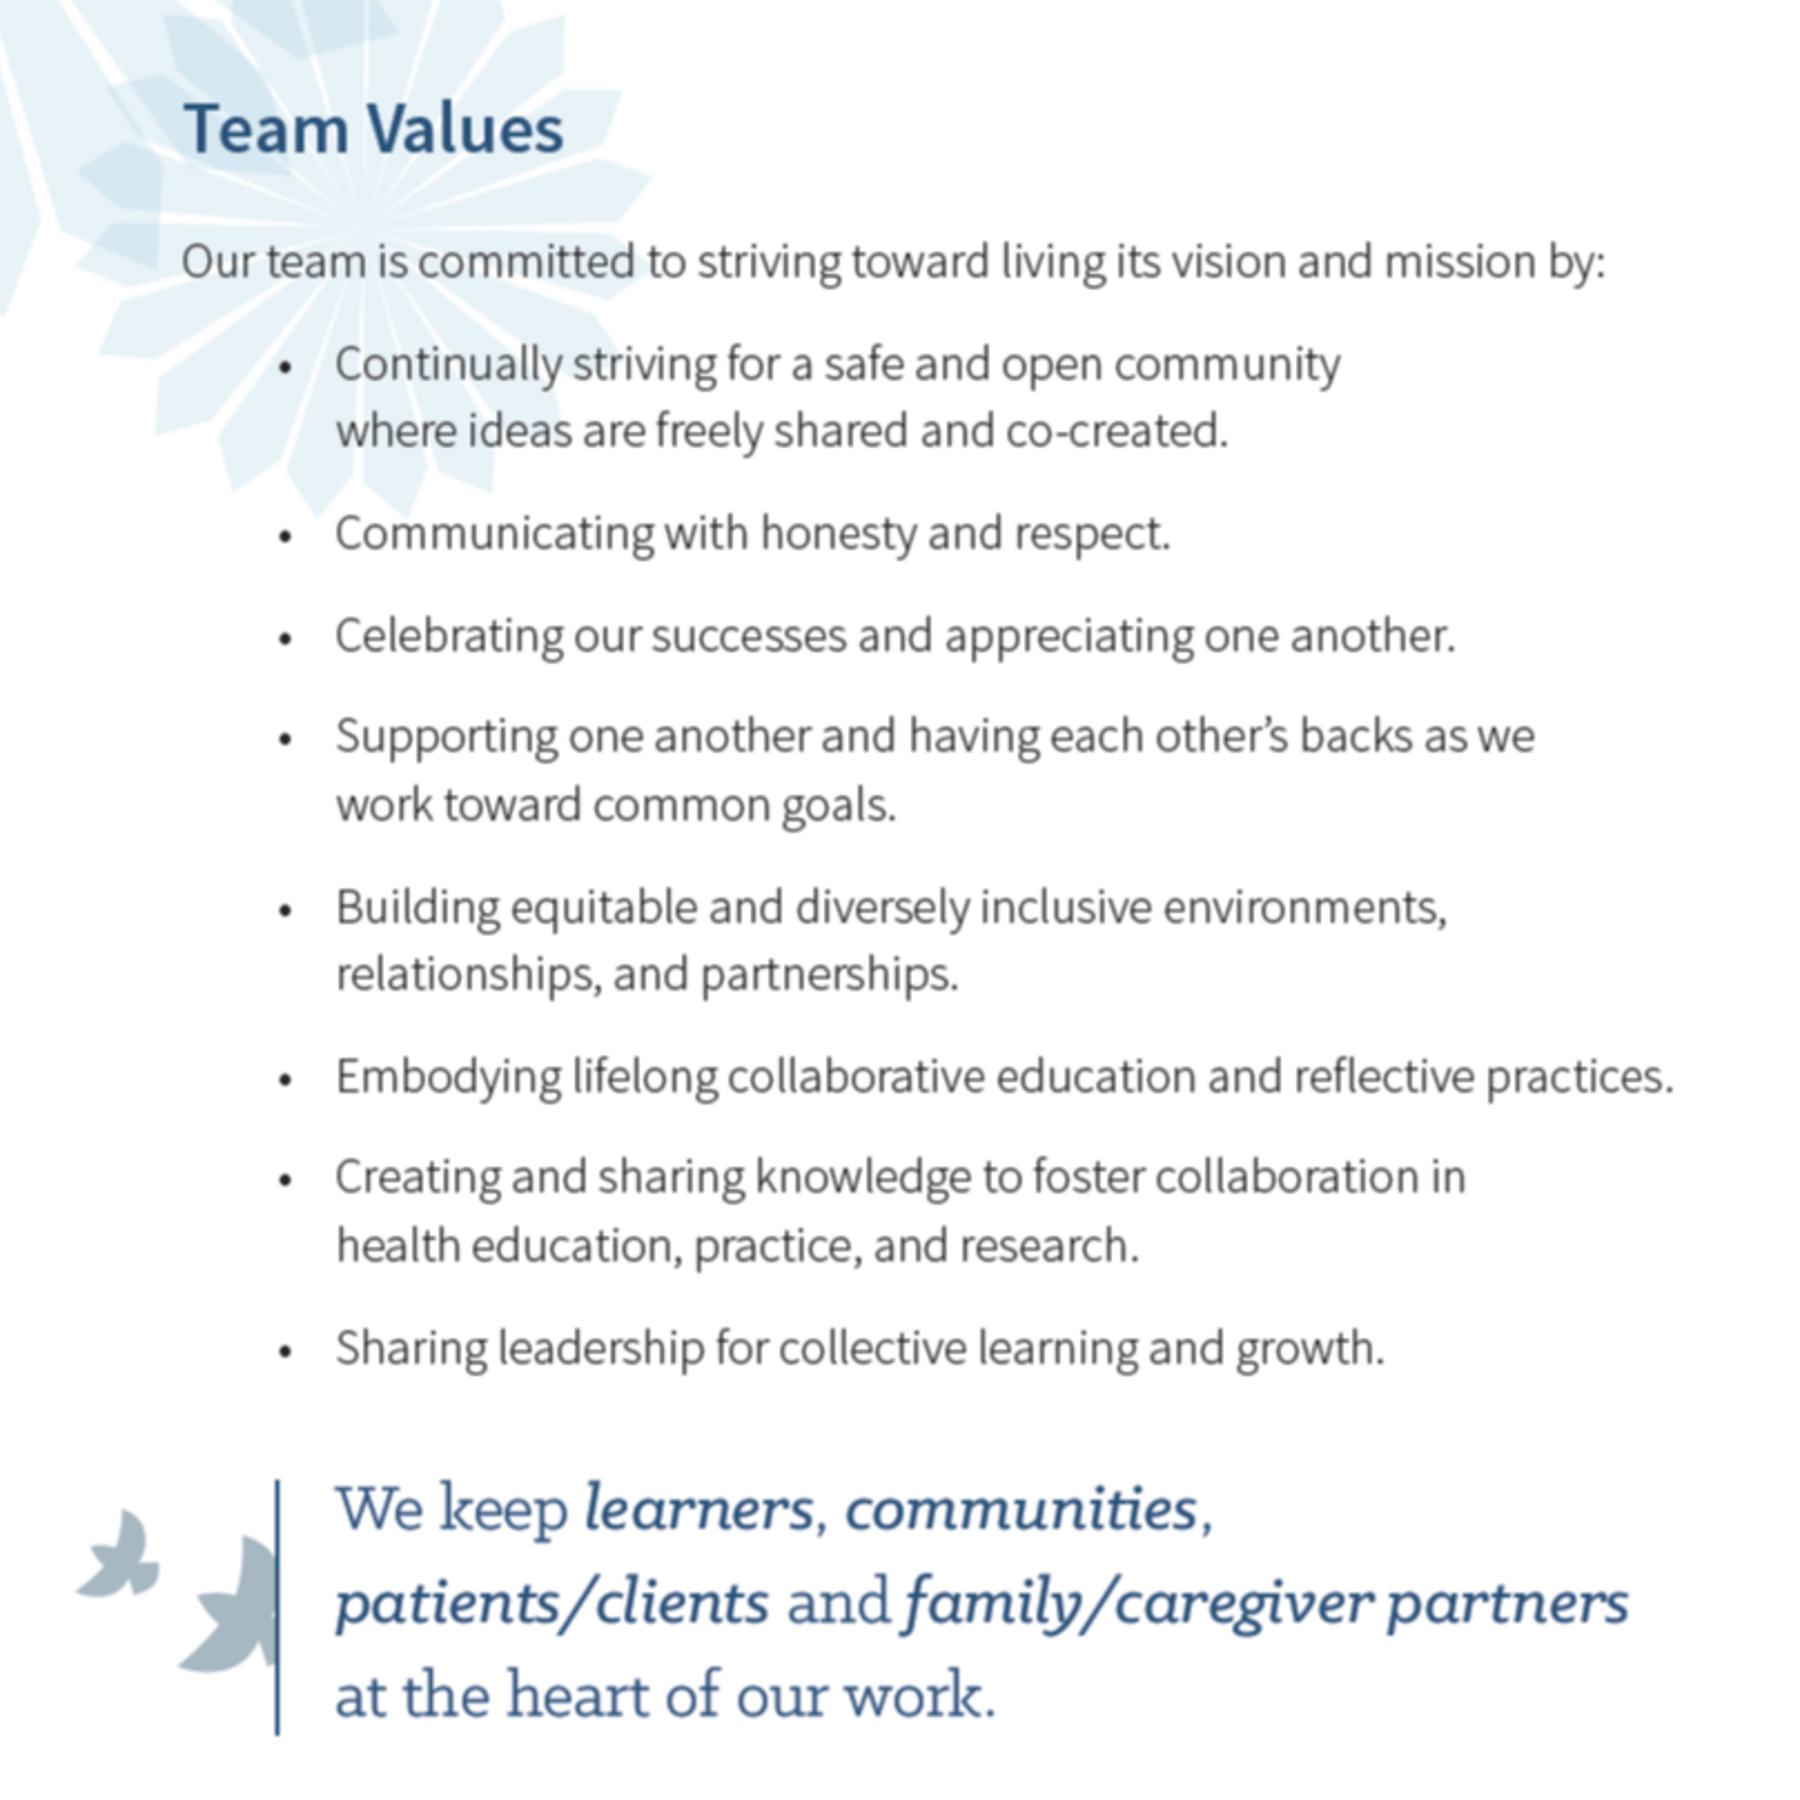 Team Values